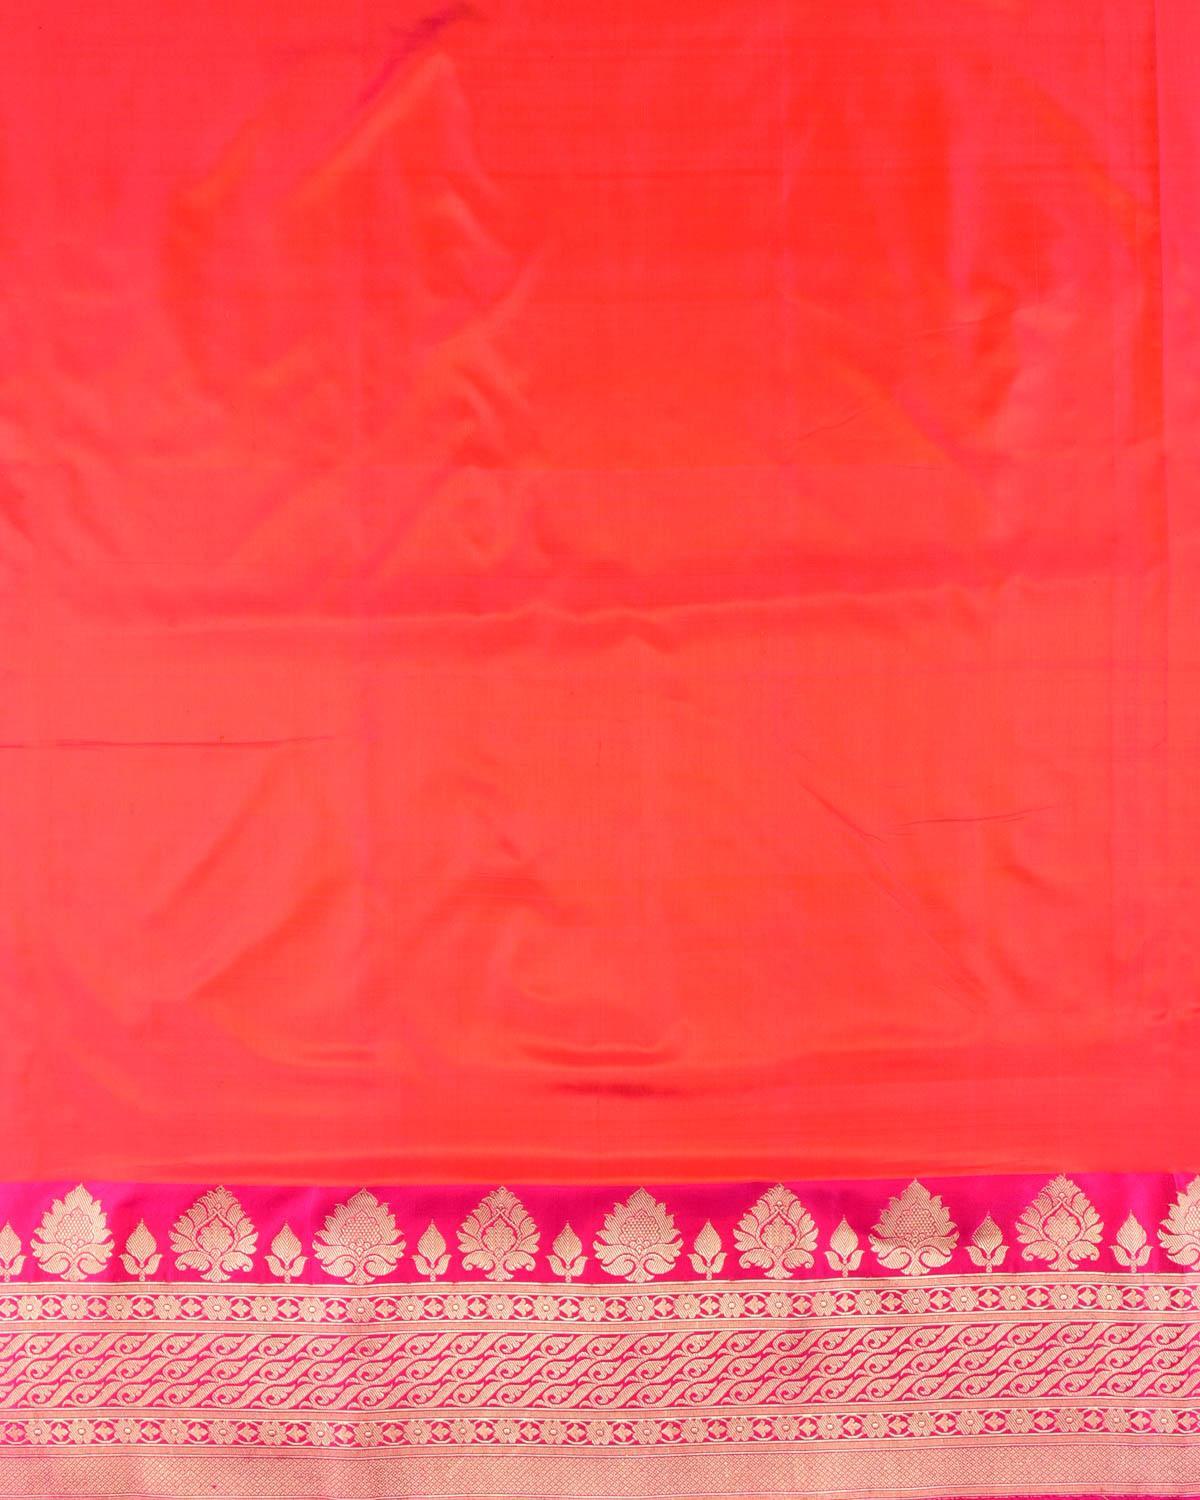 Shot Pink-Orange Banarasi Brocade Handwoven Katan Silk Saree - By HolyWeaves, Benares